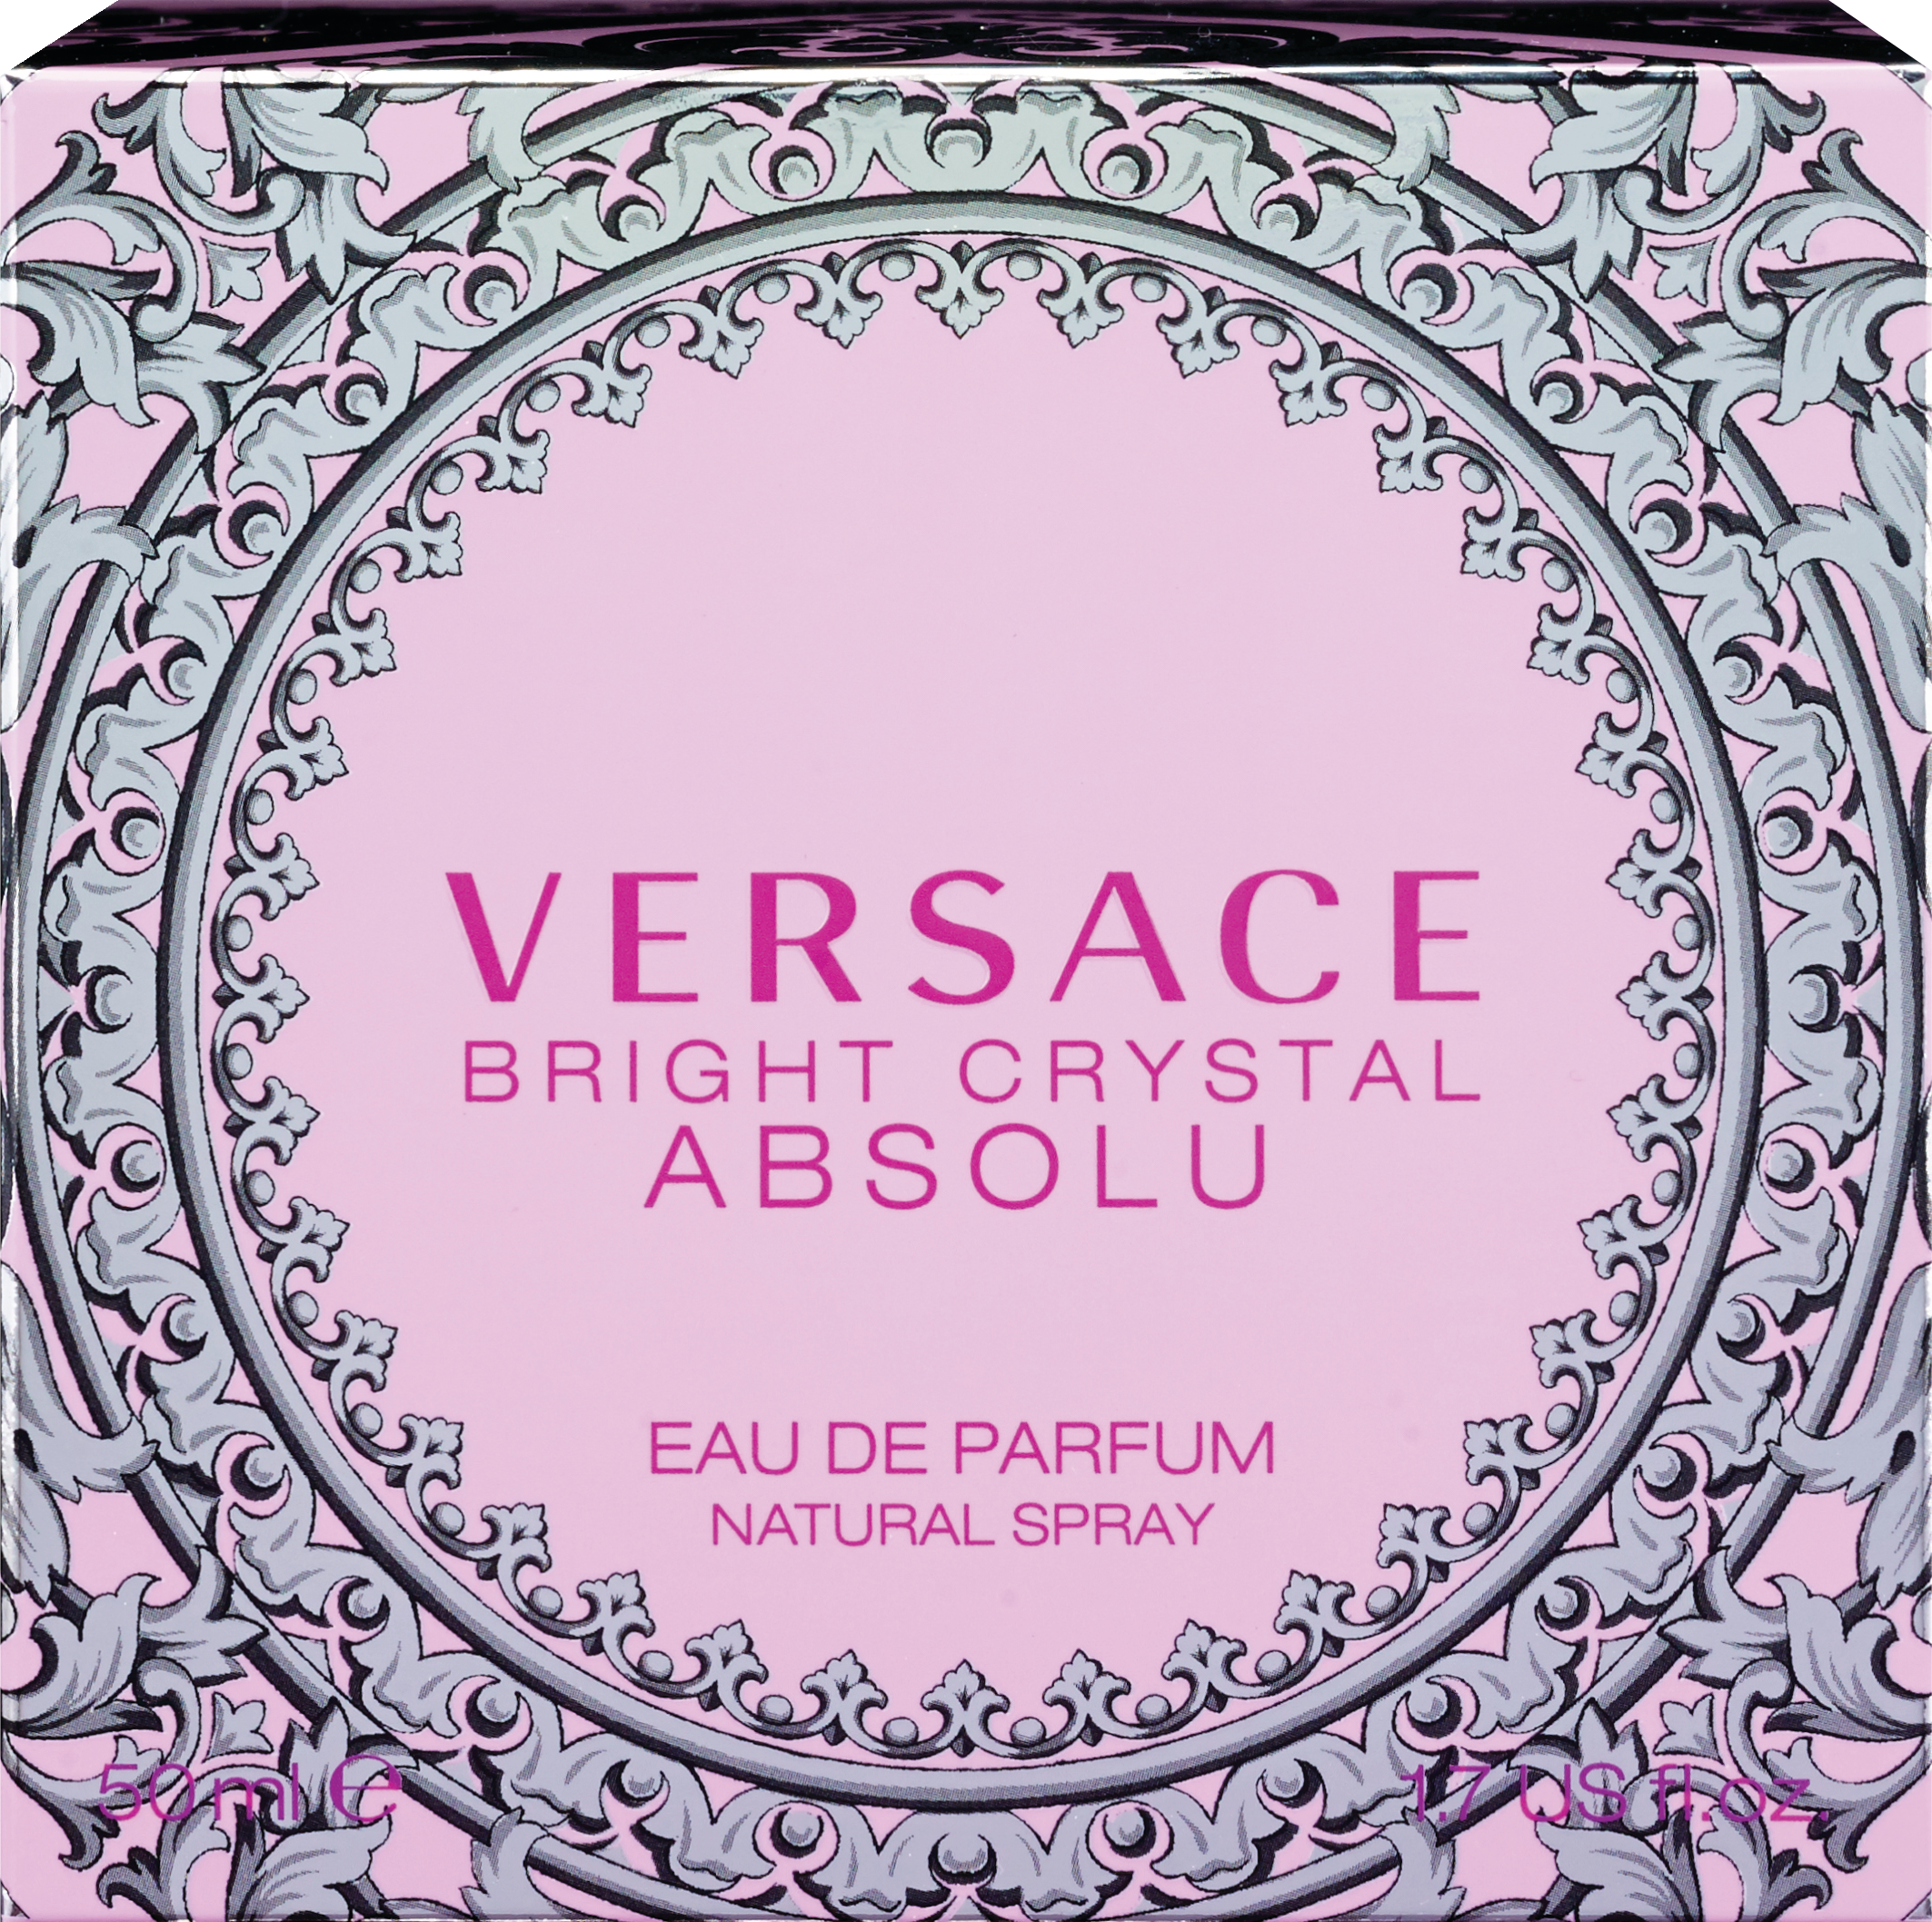 Versace Bright Crystal Absolu - Eau De Parfum, spray natural, 1.7 oz